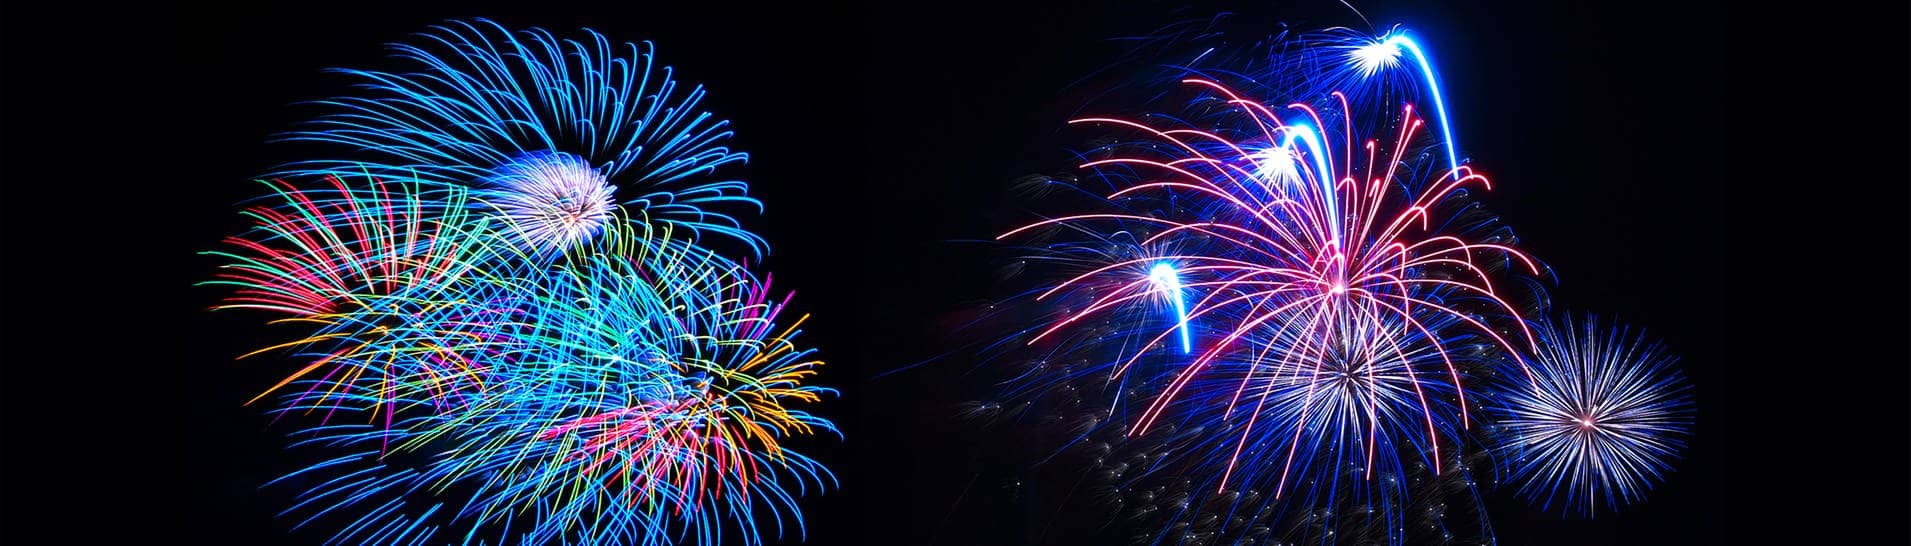 Feuerwerk (Foto: Adobe Stock/Pixelmixel)